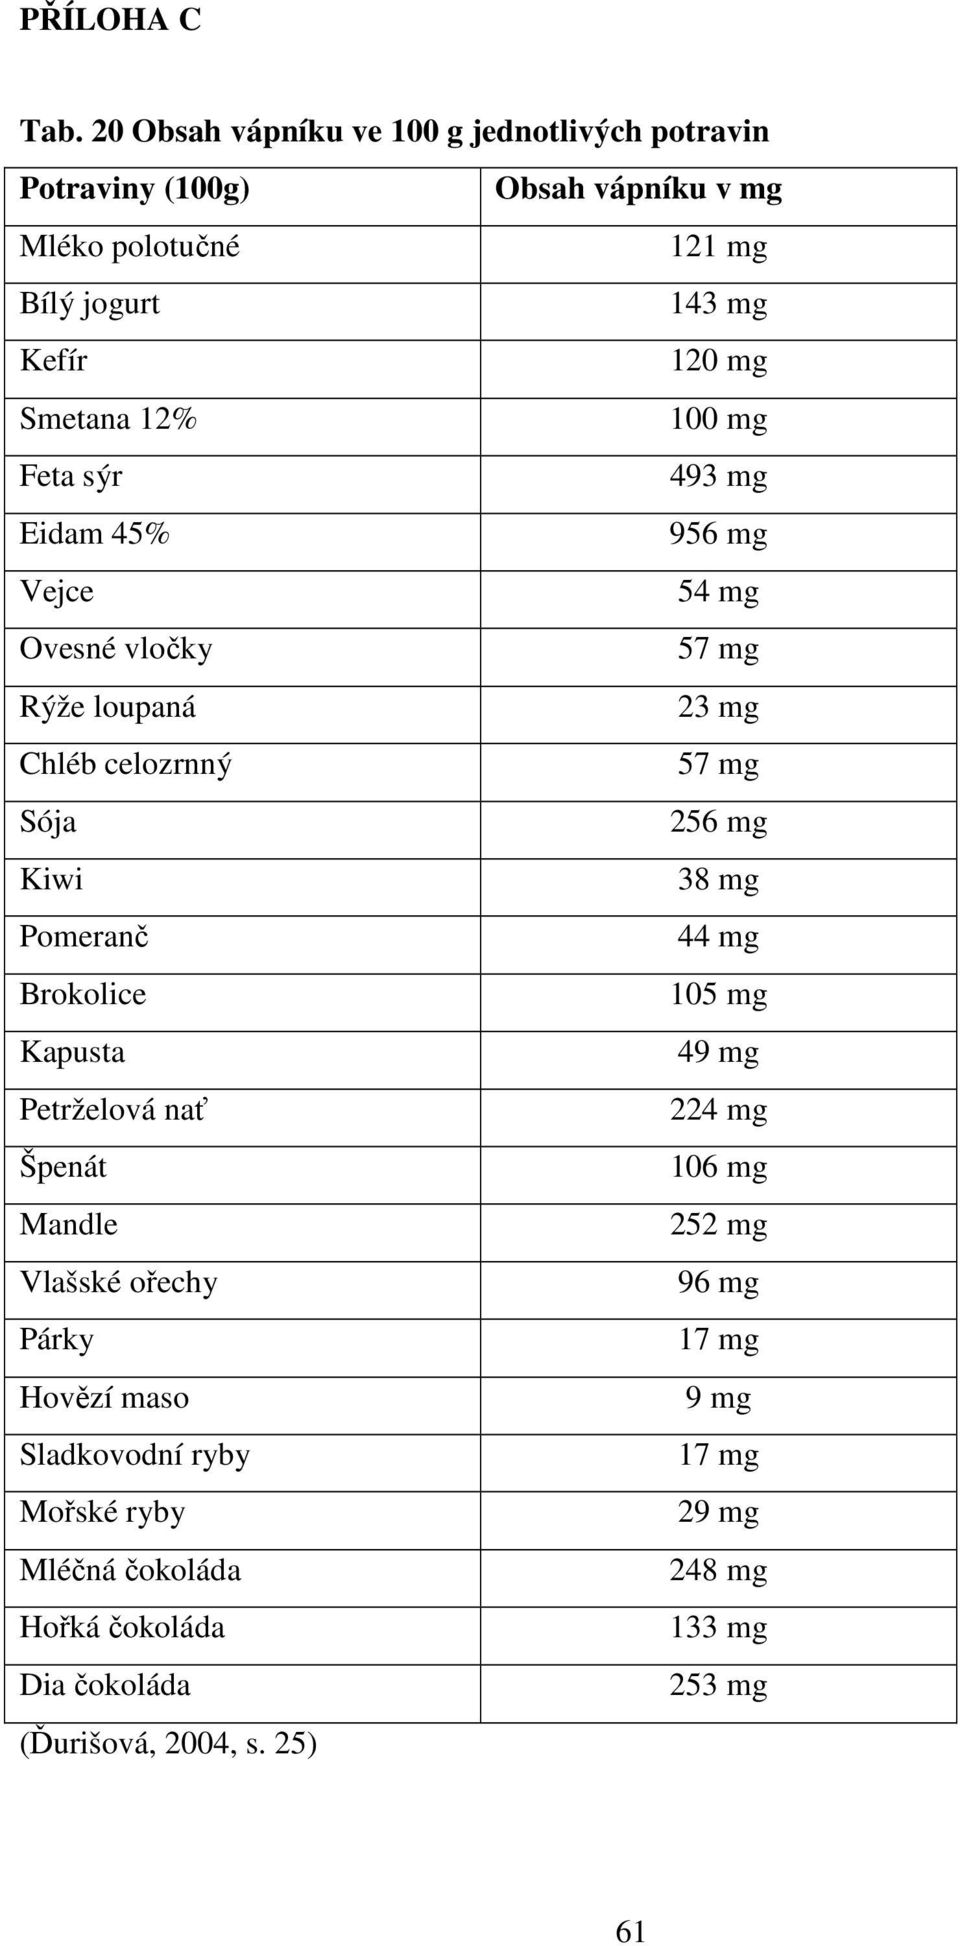 Smetana 12% 100 mg Feta sýr 493 mg Eidam 45% 956 mg Vejce 54 mg Ovesné vločky 57 mg Rýže loupaná 23 mg Chléb celozrnný 57 mg Sója 256 mg Kiwi 38